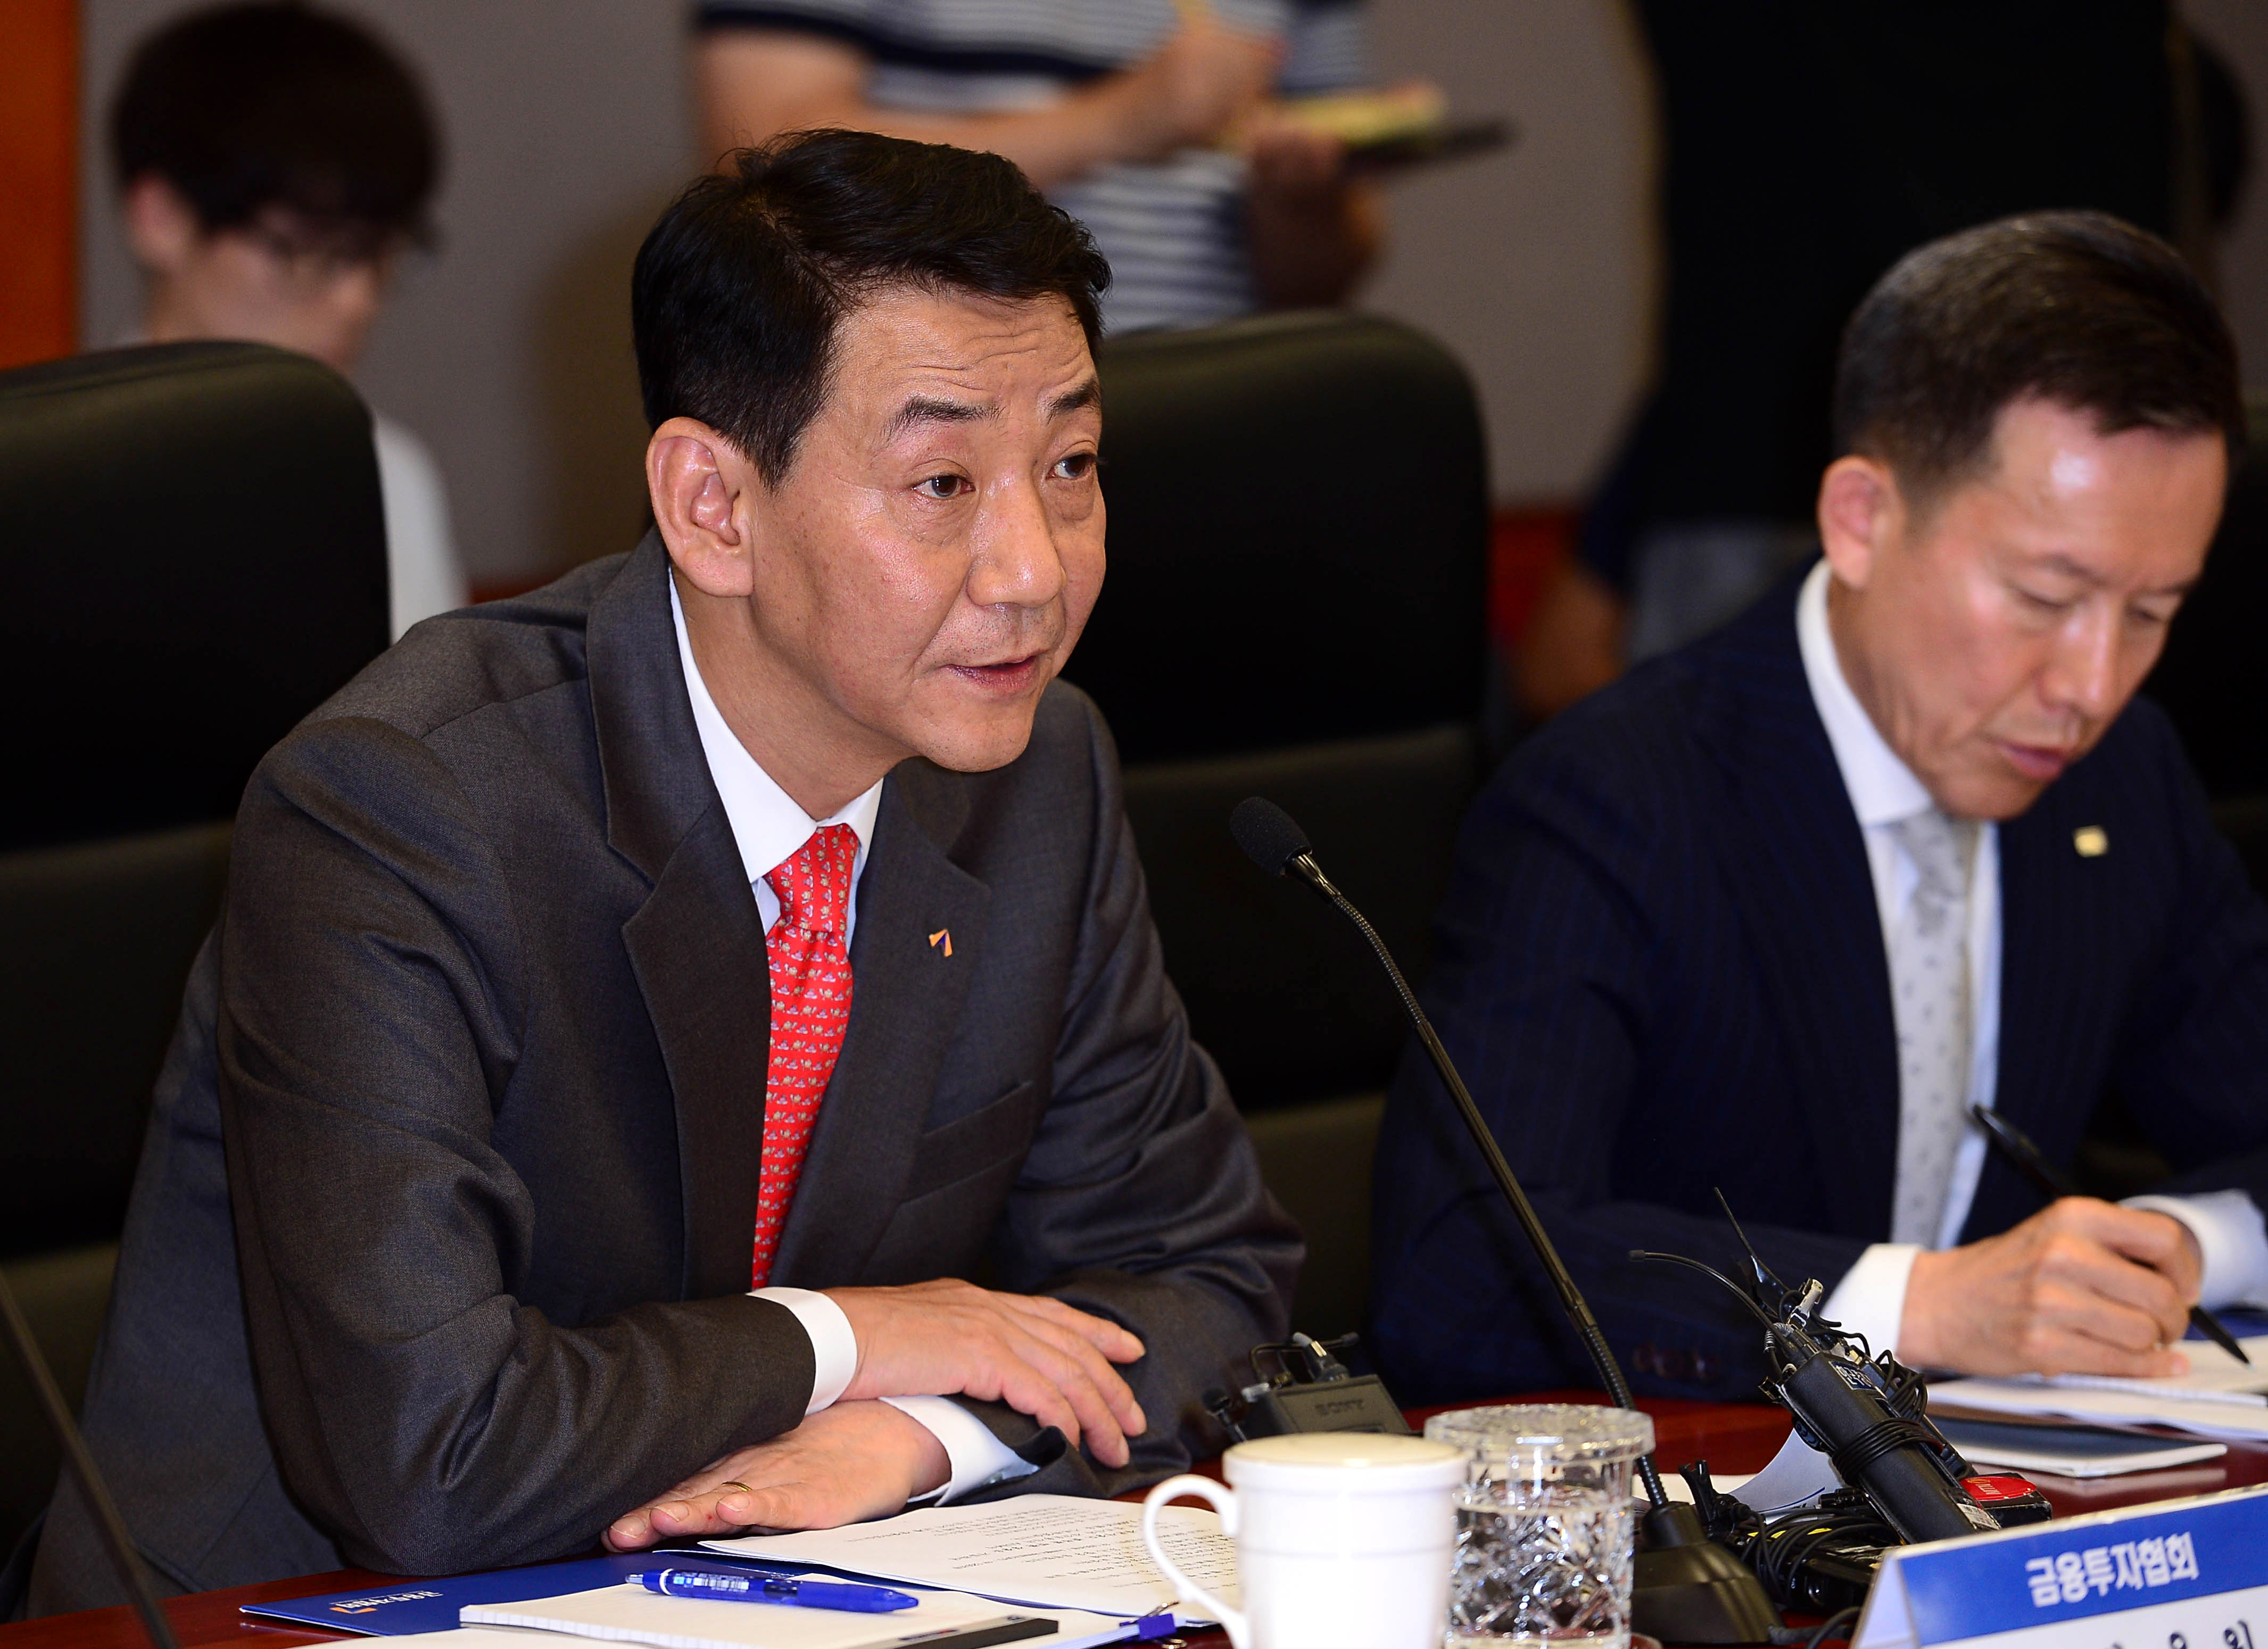 국민연금과 금융투자업계간 동반성장 방안 논의를 위한 간담회 개최 (2019.6.27) 1